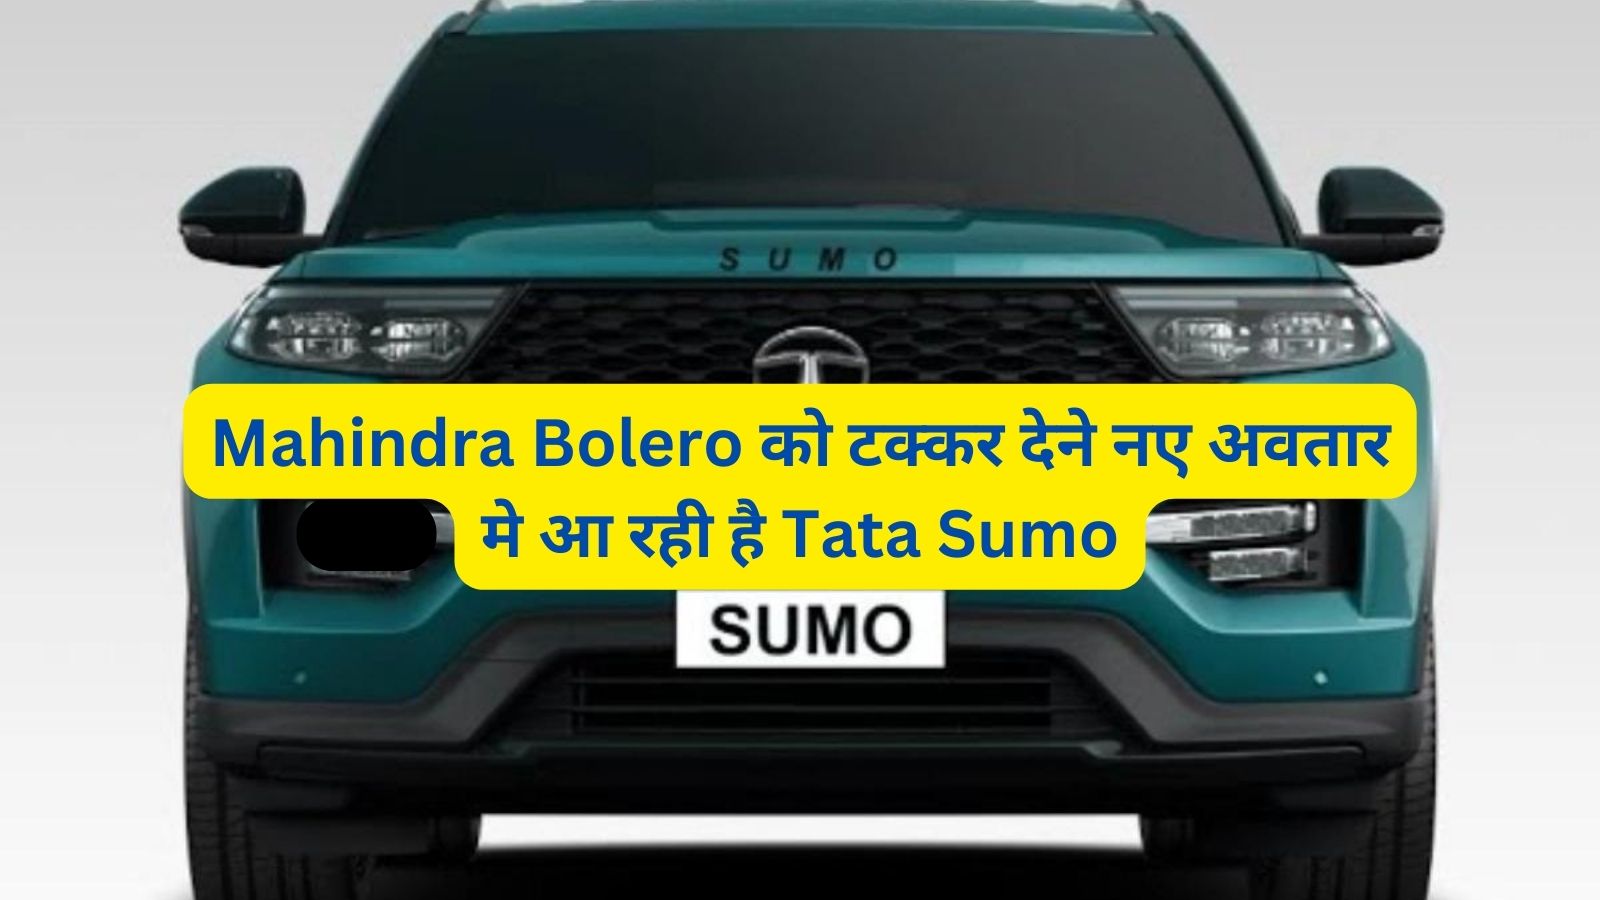 Mahindra Bolero को टक्कर देने नए अवतार मे आ रही है Tata Sumo,जानिए इसके दमदार इंजन और लग्जरी फीचर्स के बारे में